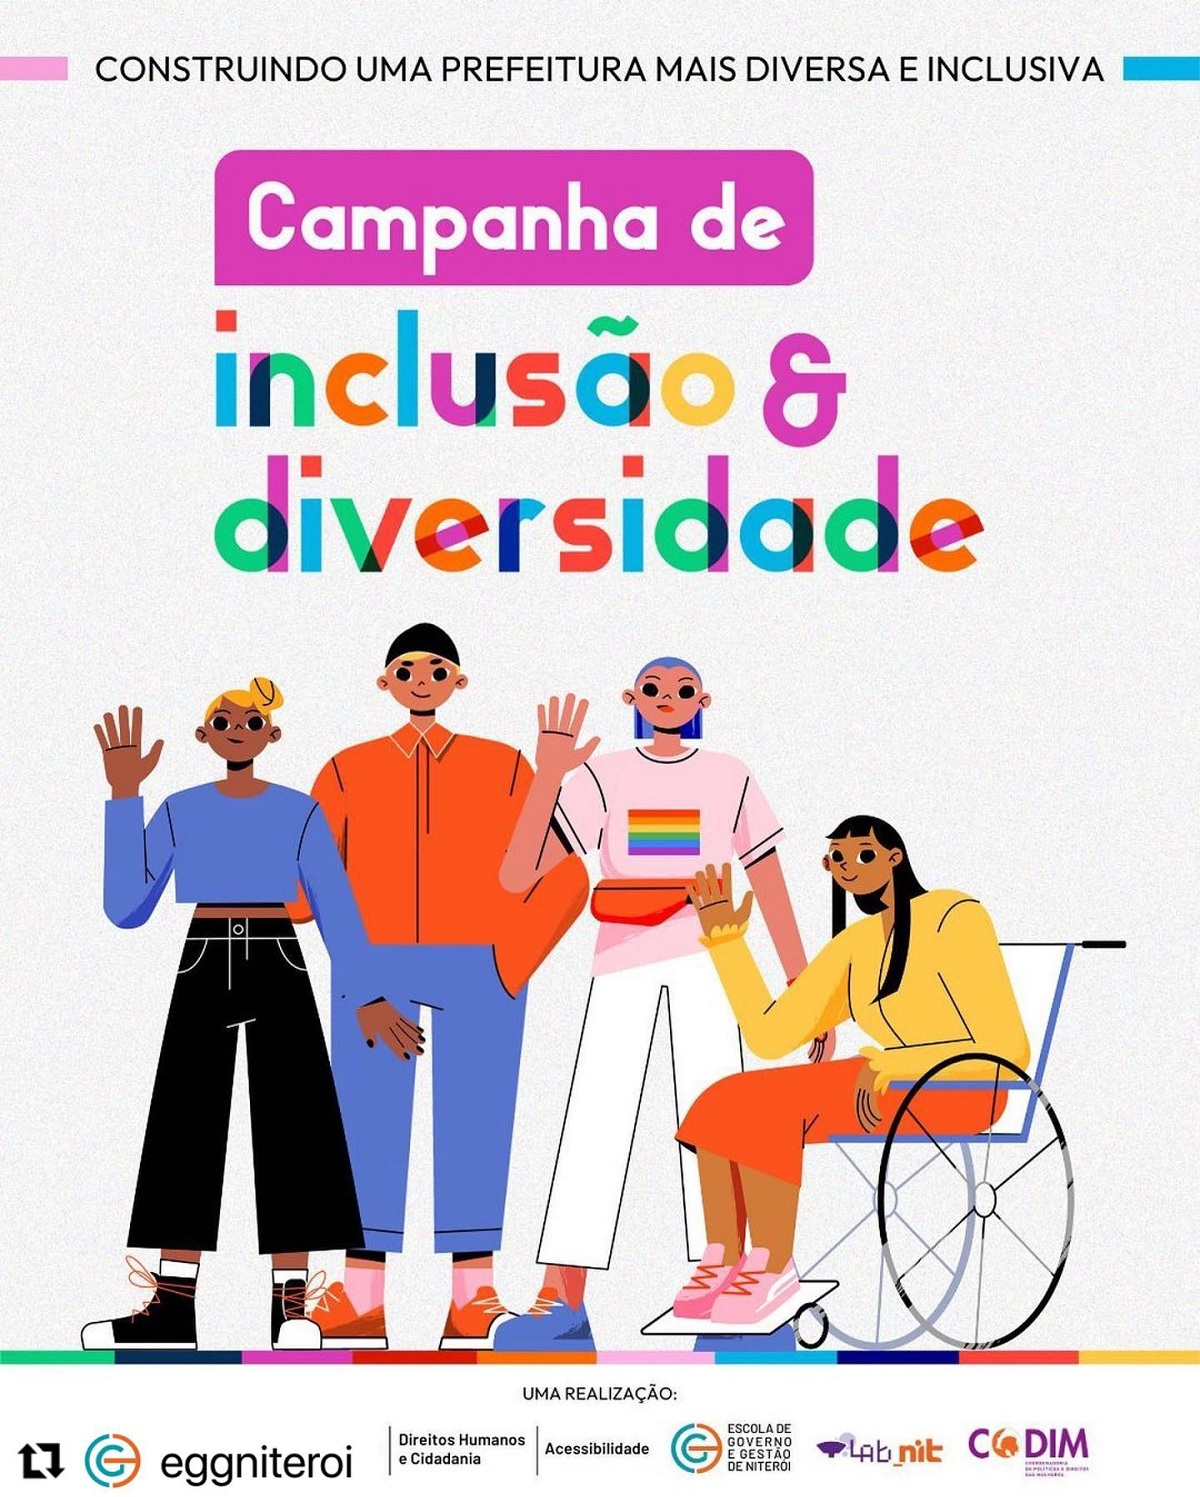 2ªSemana da Diversidade e Inclusão AeC - 10/11/2022 